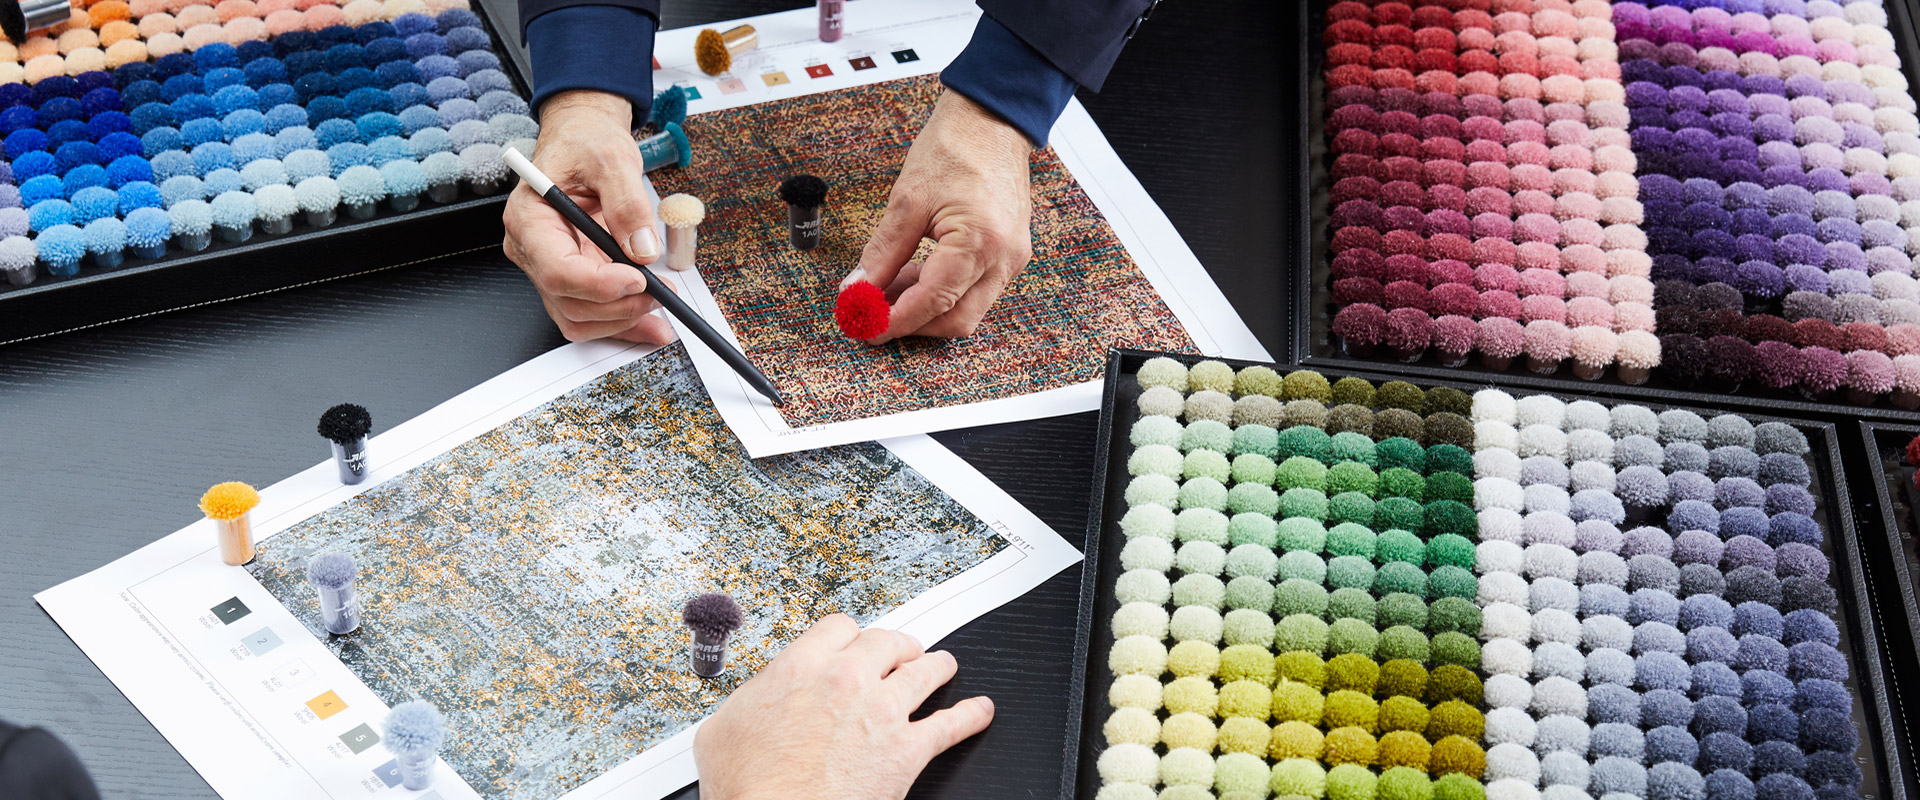 Designprofis betrachten und wählen Teppichmuster und -farben aus, dargestellt durch farblich markierte Pompoms auf Farbkarten und Musterbüchern, auf einem dunklen Tisch mit mehreren Farbplatten und Textilproben im Fokus.